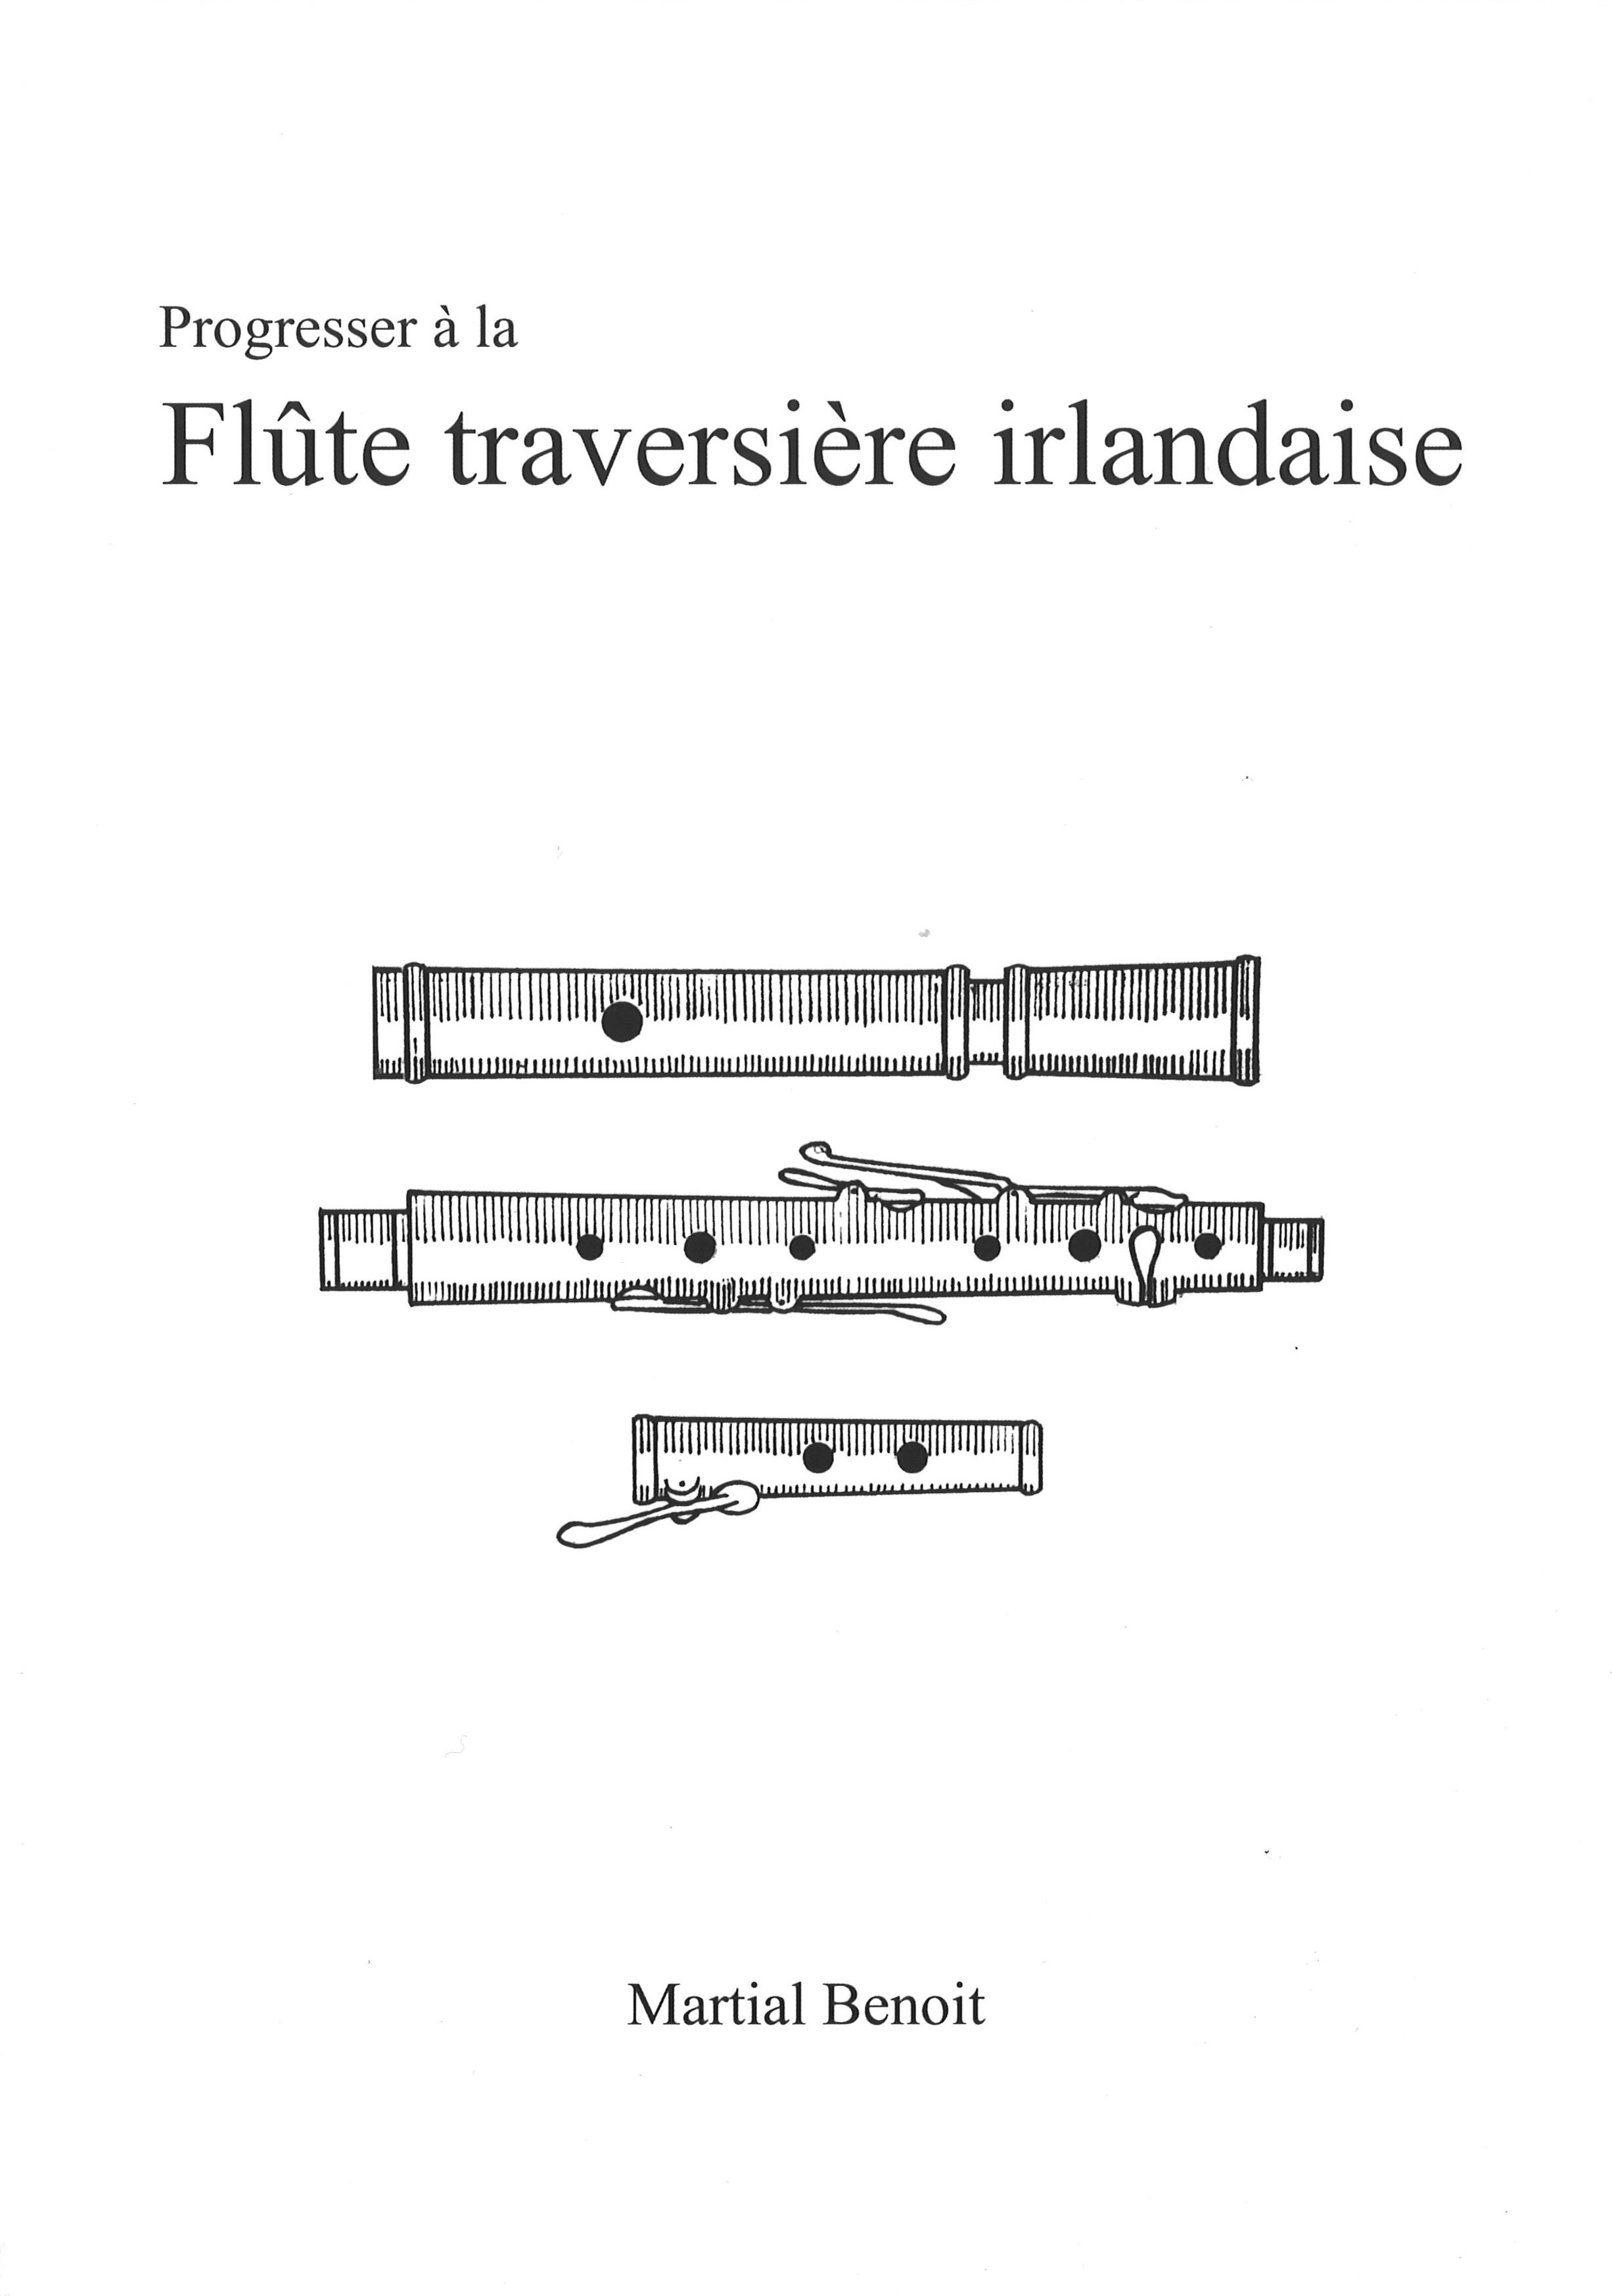 https://www.sonerien.com/7350/progresser-a-la-flute-traversiere-irlandaise.jpg